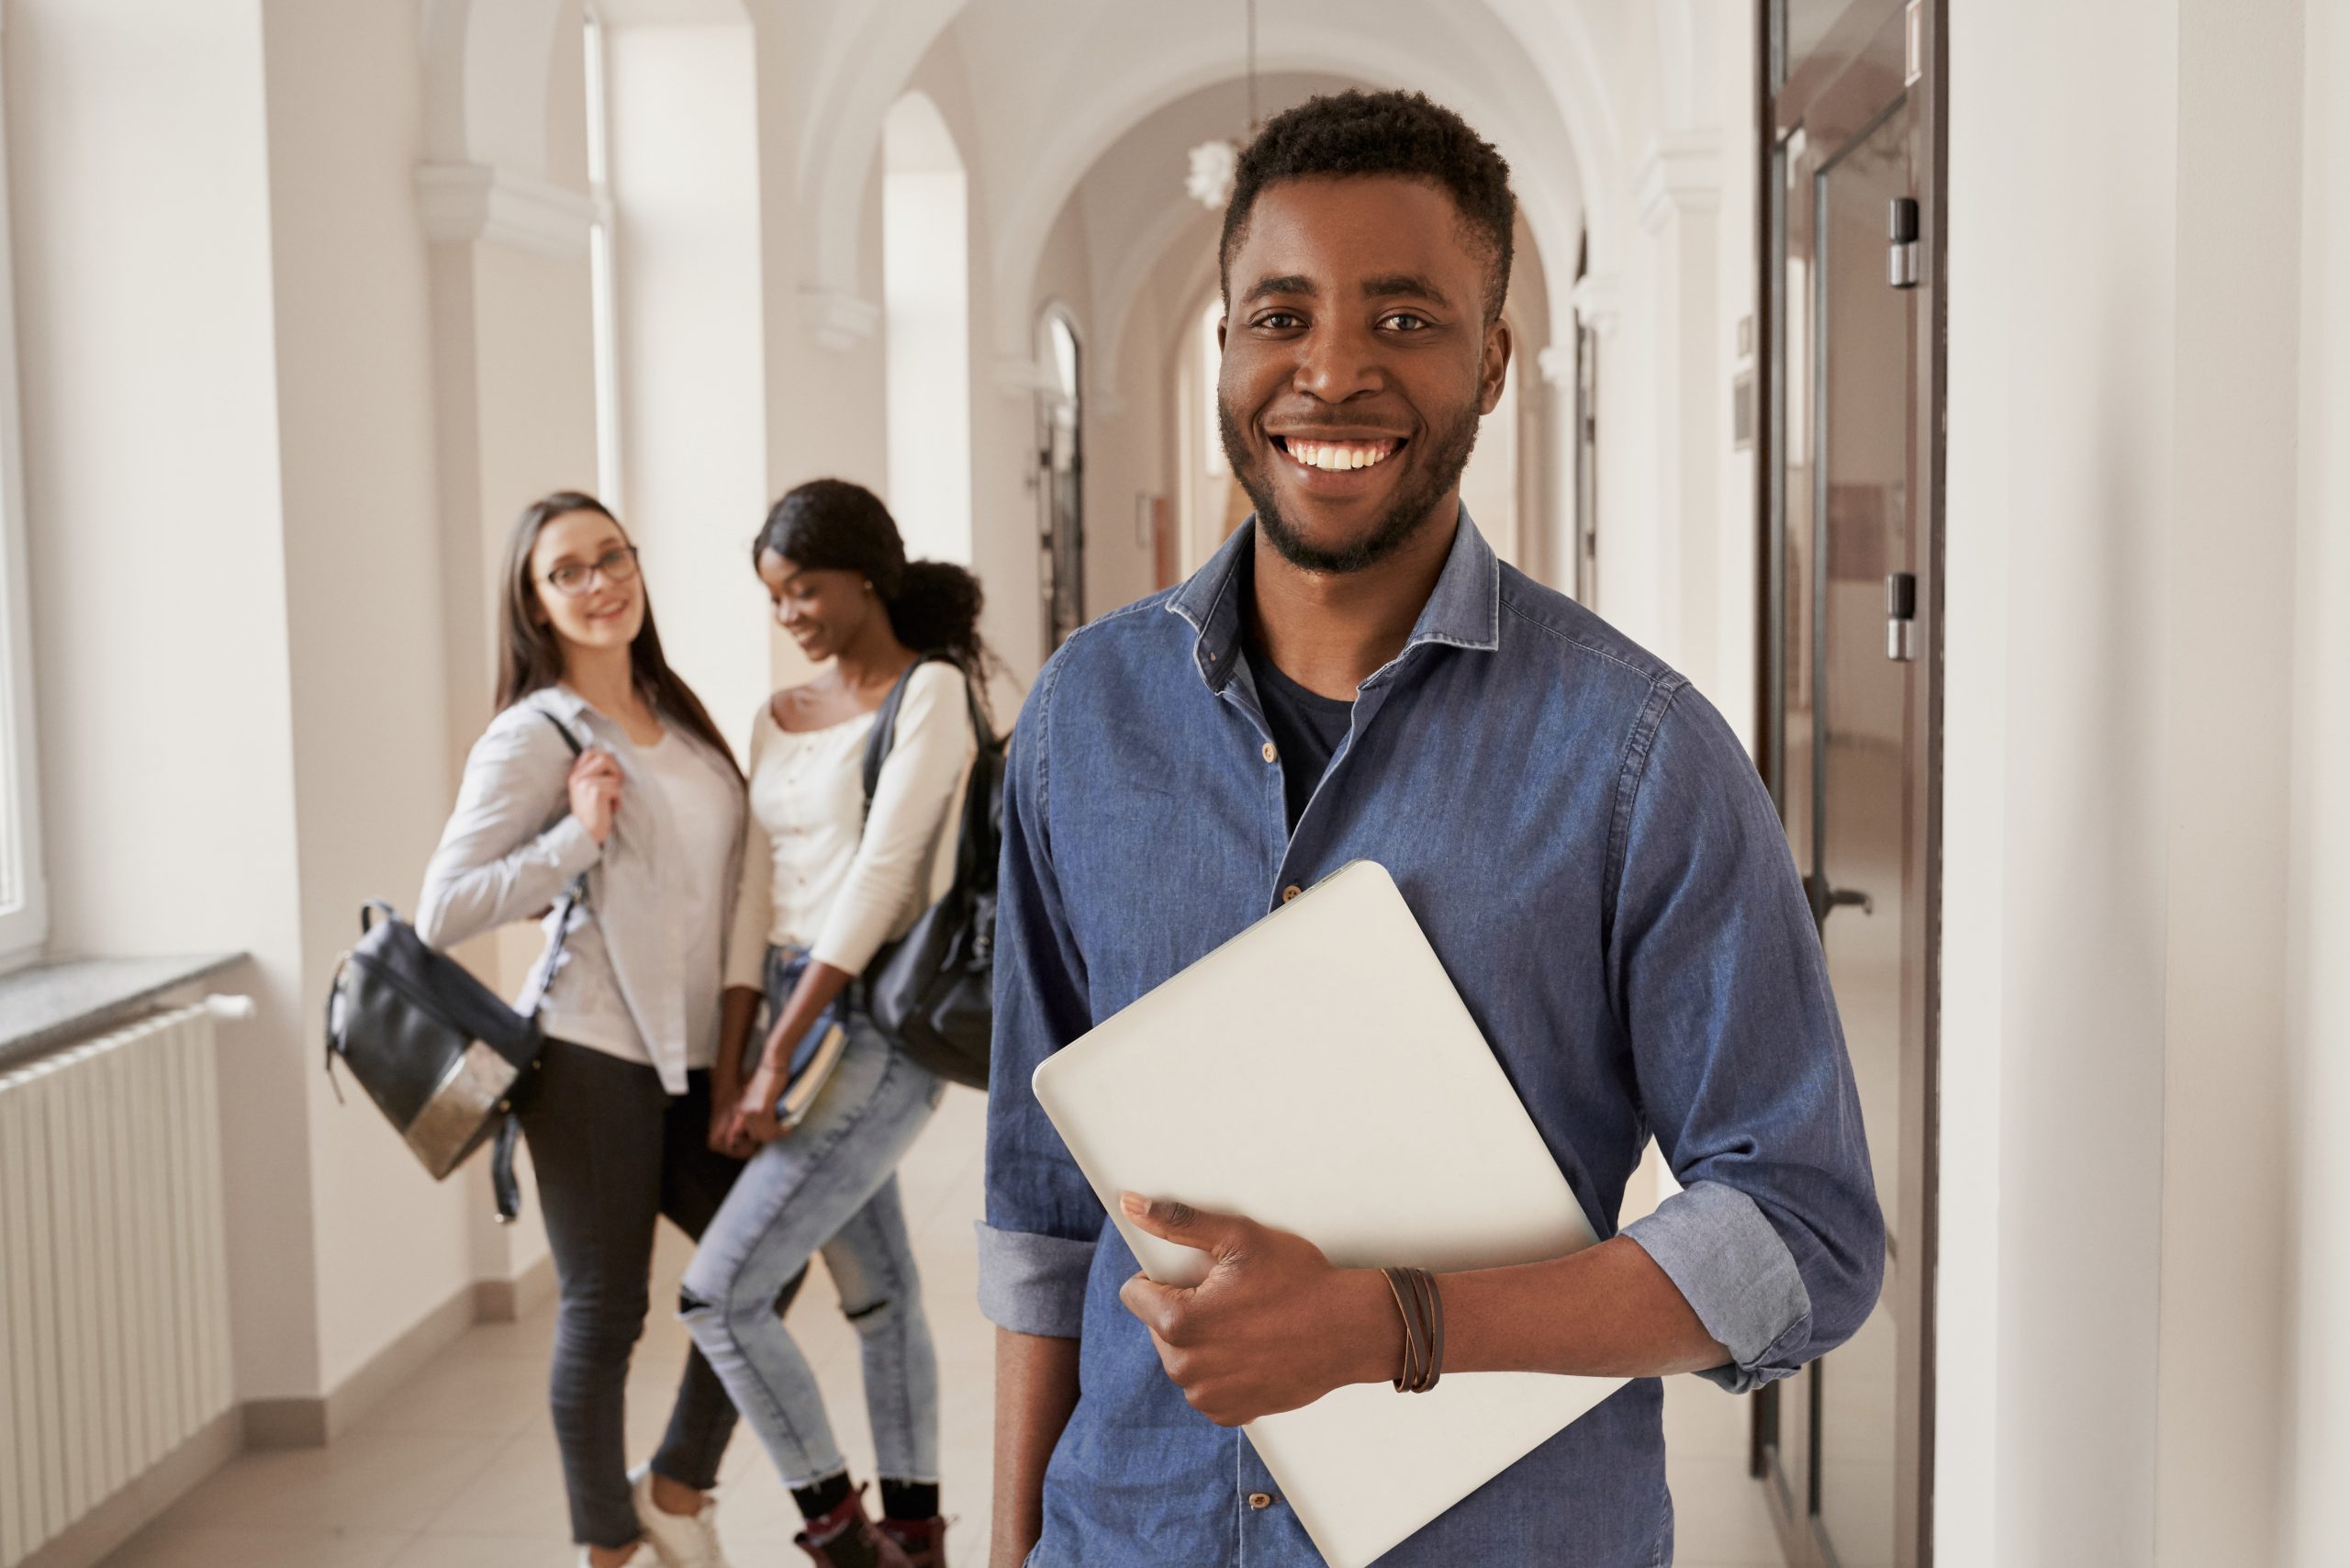 Estudante posa sorridente segurando livros no corredor da universidade, com colegas ao fundo